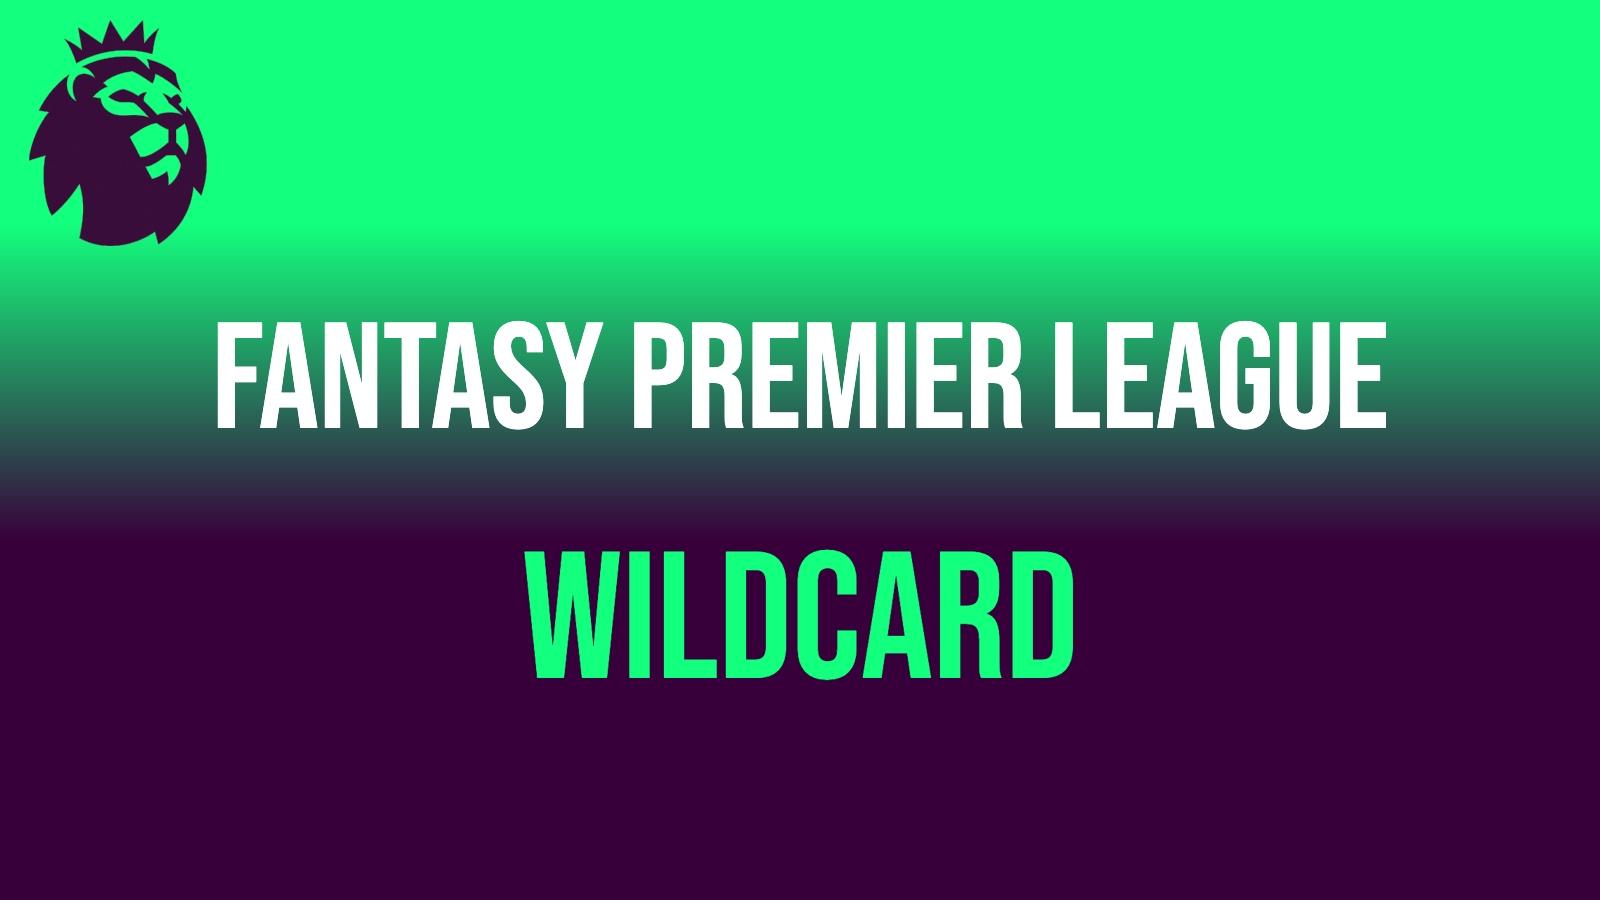 Fantasy premier League wildcard with Premier League lion logo in top left corner